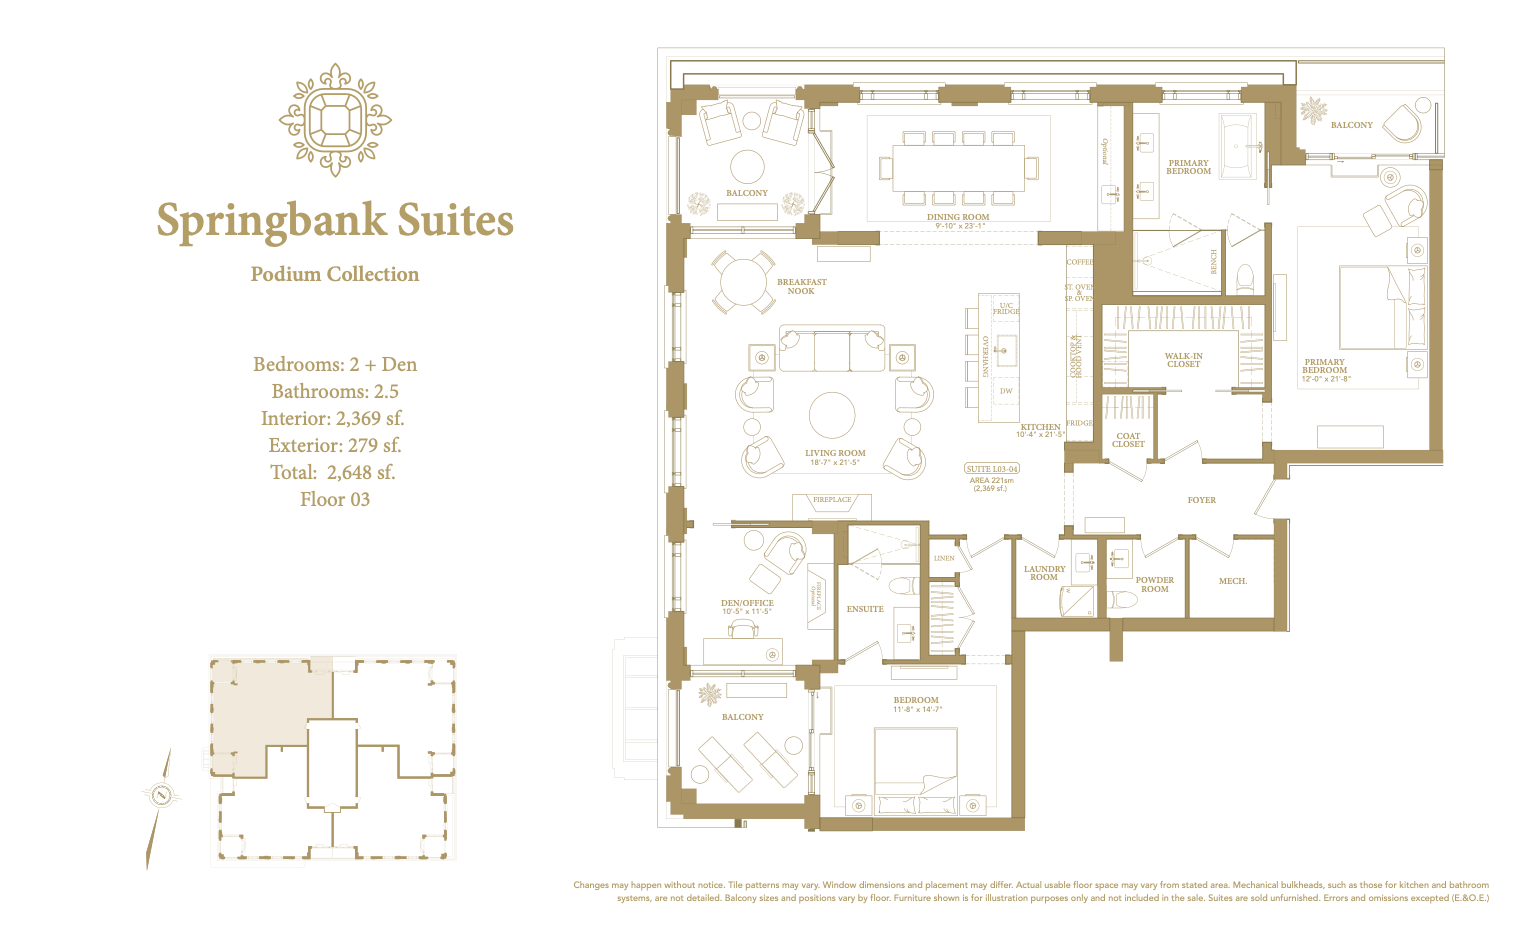 Springbank Suites floor plan